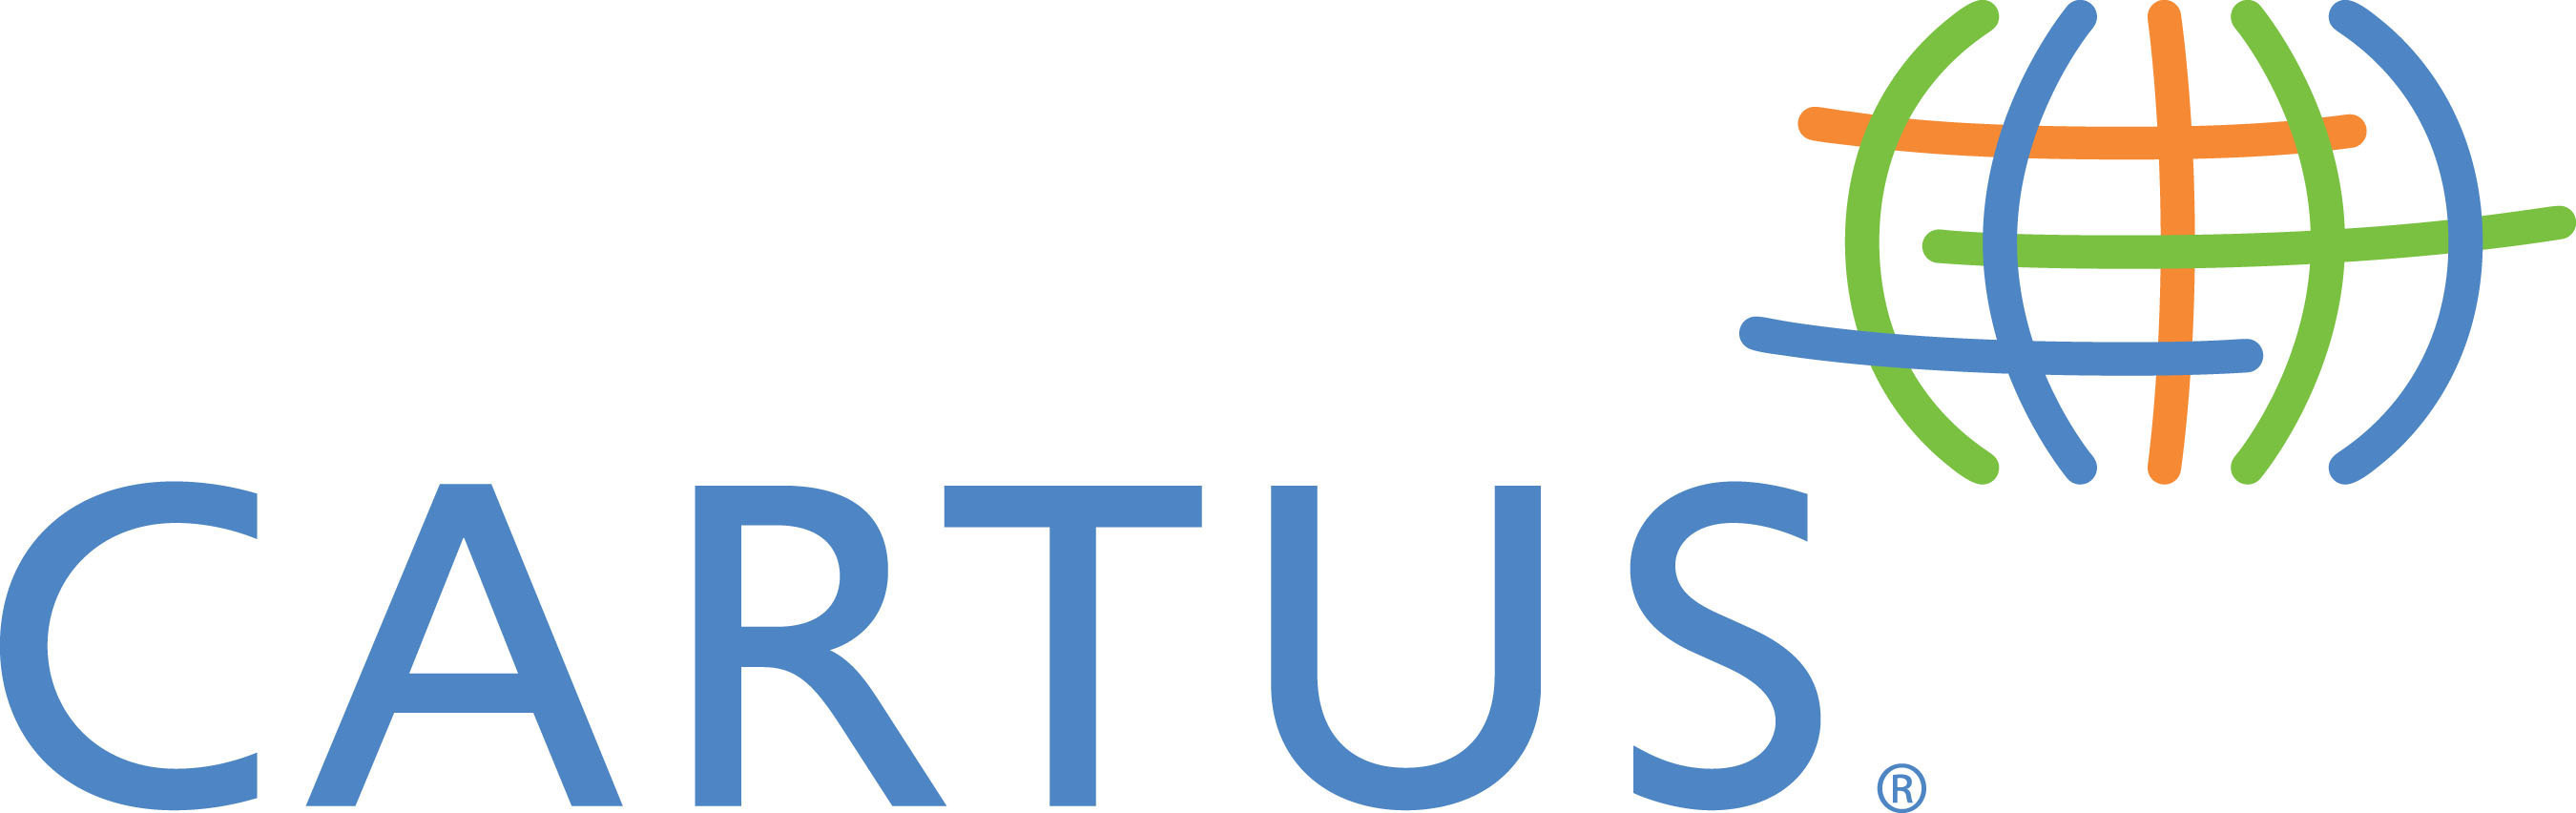 Cartus logo. (PRNewsFoto/Cartus) (PRNewsFoto/CARTUS)